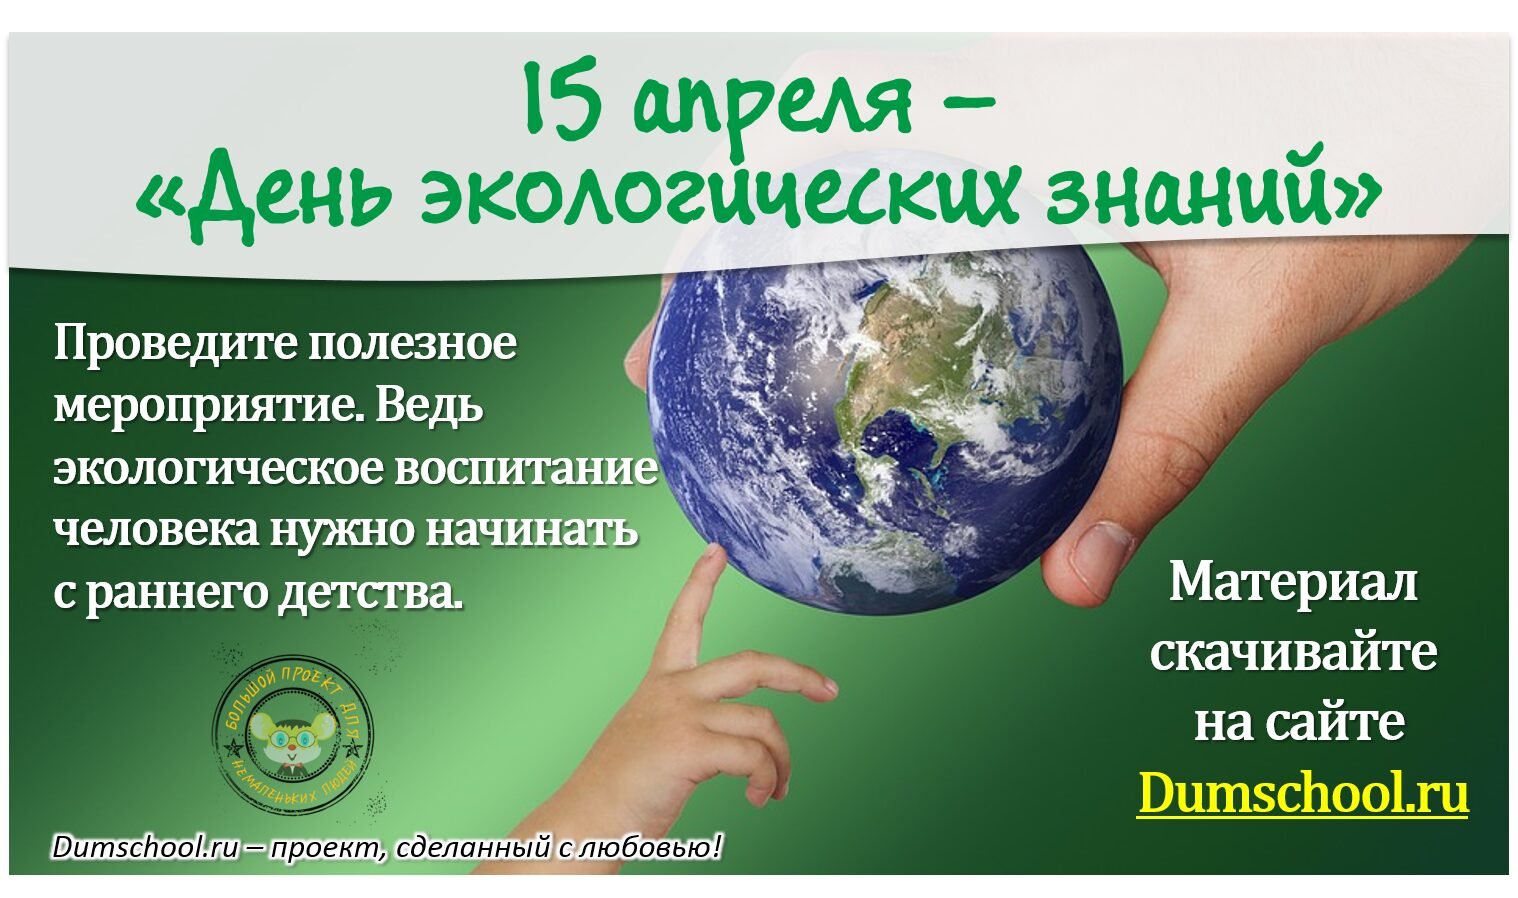 15 апреля день экологических знаний для детей. 15 Апреля день экологических знаний. Всемирный день экологических знаний. День экологической грамотности. Открытка день экологических знаний.